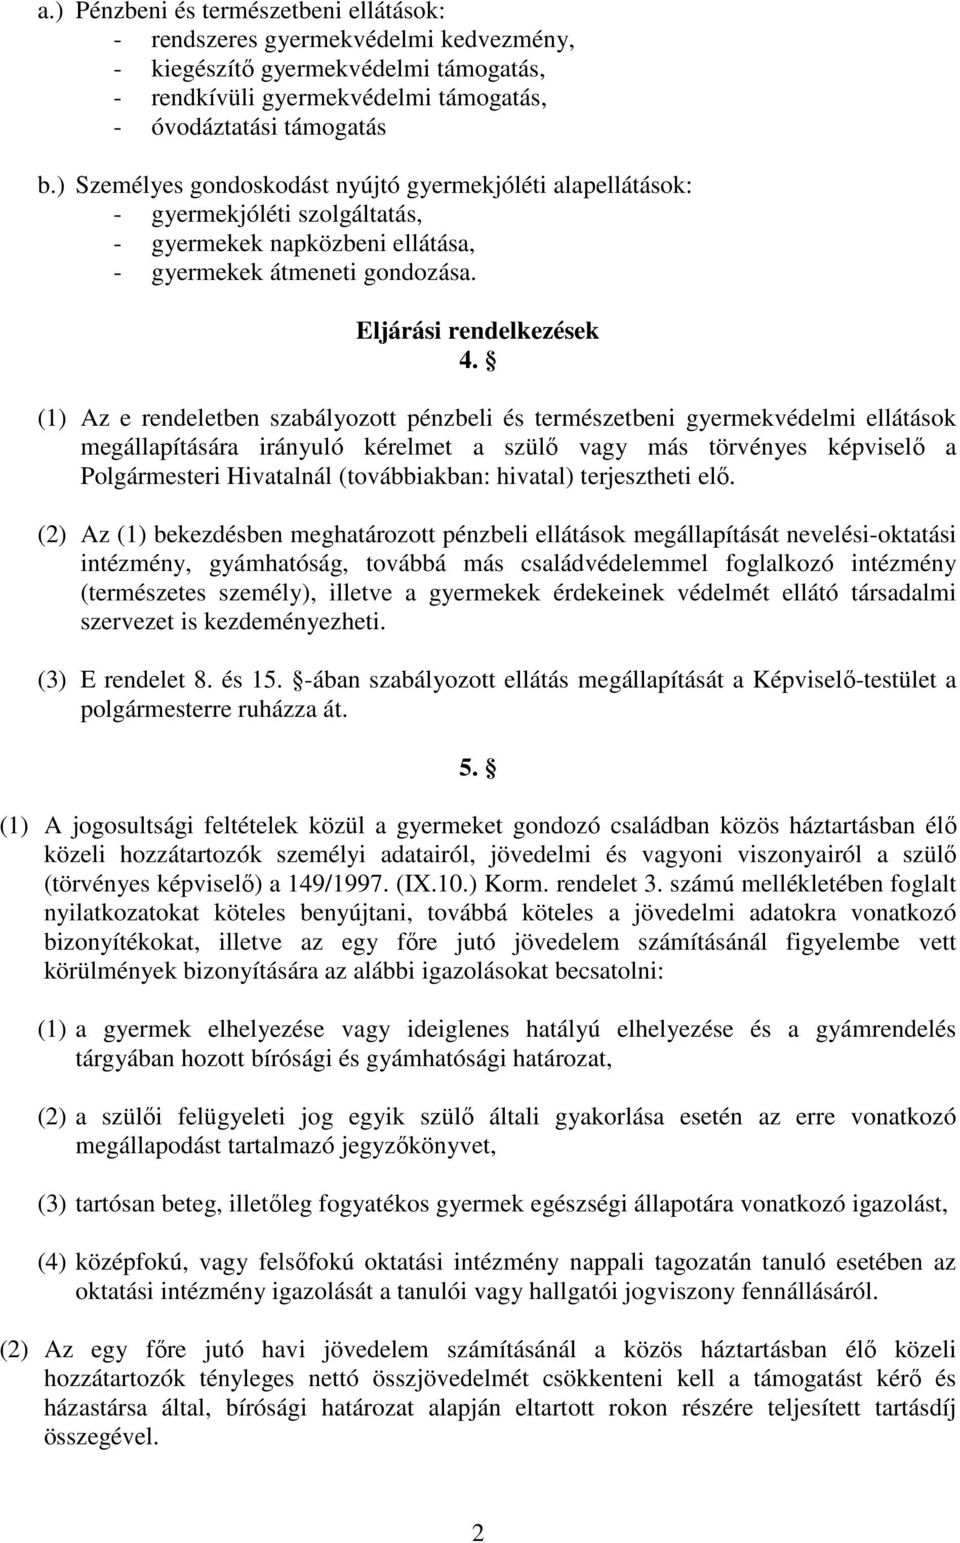 (1) Az e rendeletben szabályozott pénzbeli és természetbeni gyermekvédelmi ellátások megállapítására irányuló kérelmet a szülı vagy más törvényes képviselı a Polgármesteri Hivatalnál (továbbiakban: